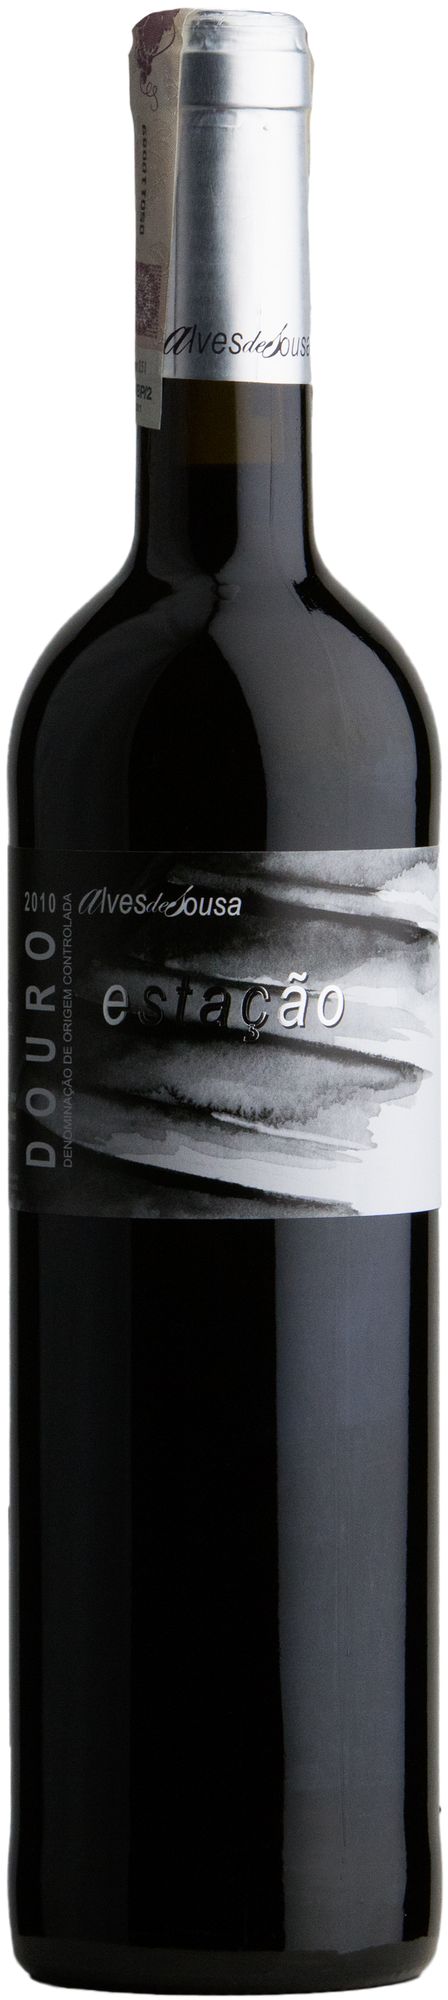 Wino Alves de Sousa Quinta da Estacao Douro DOC